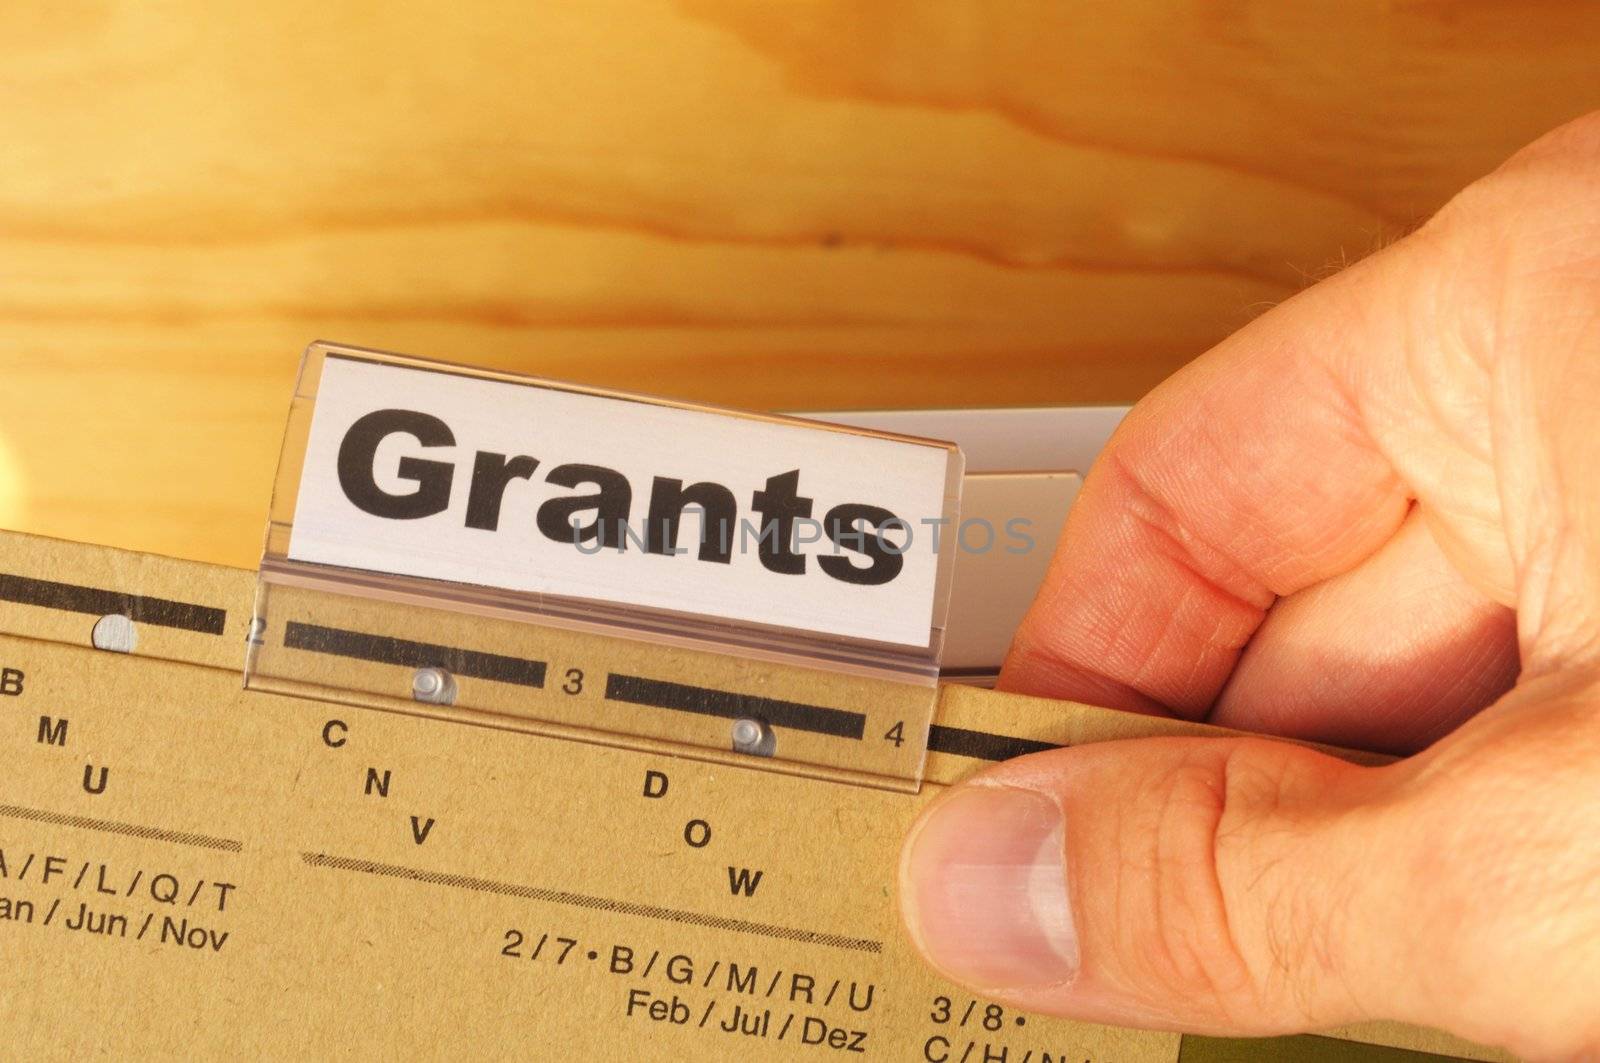 grants by gunnar3000